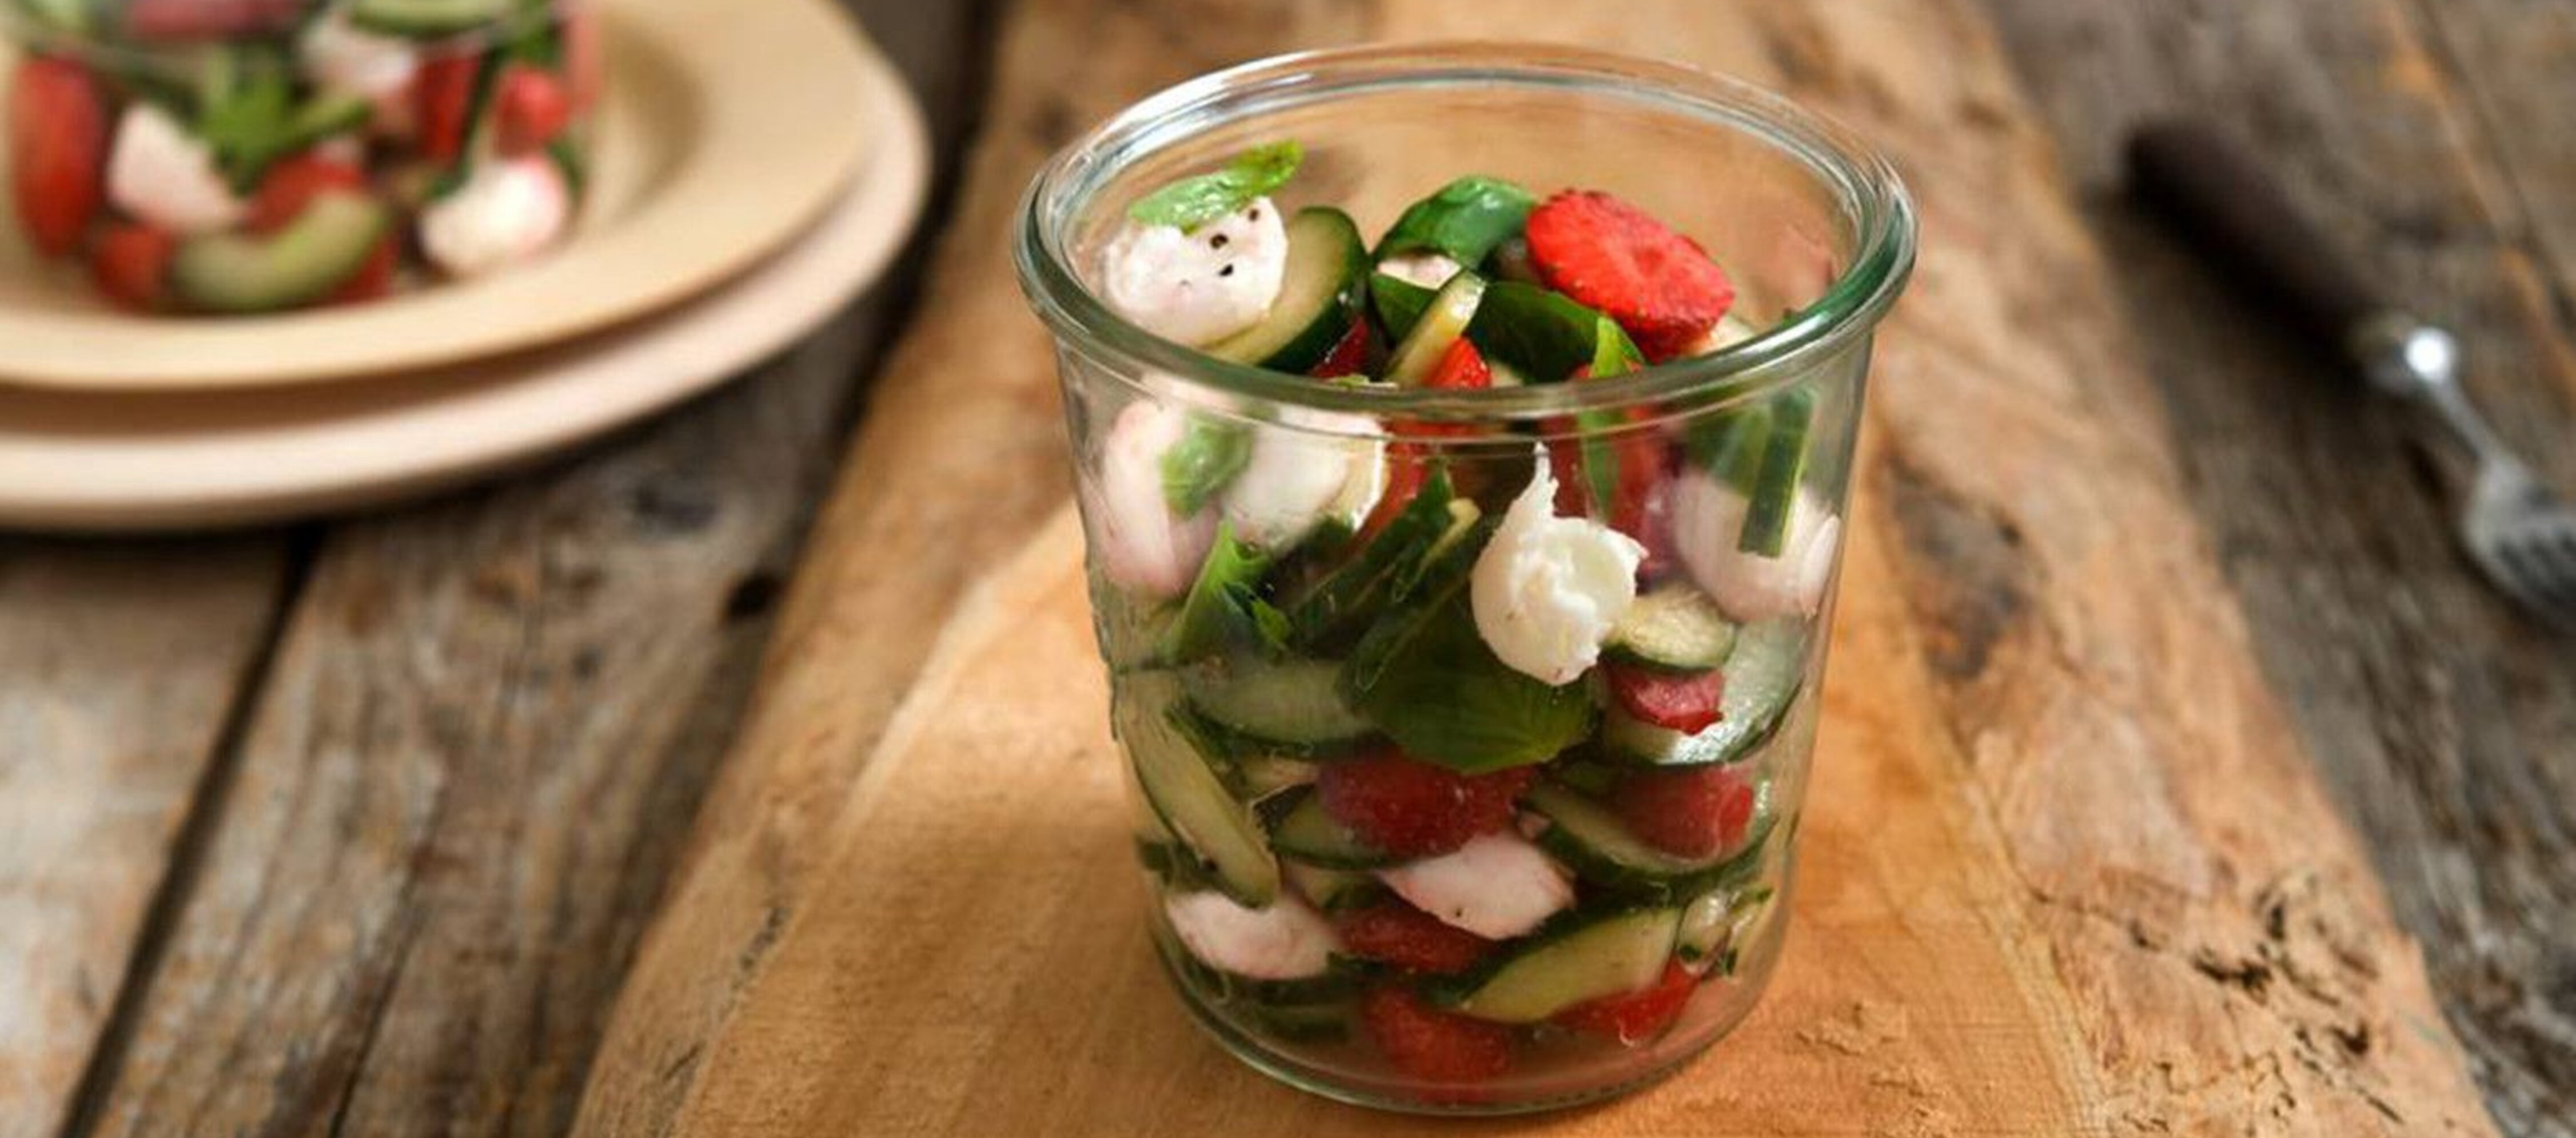 Gurken-Mozzarella-Salat mit Erdbeeren | Carl Kühne KG